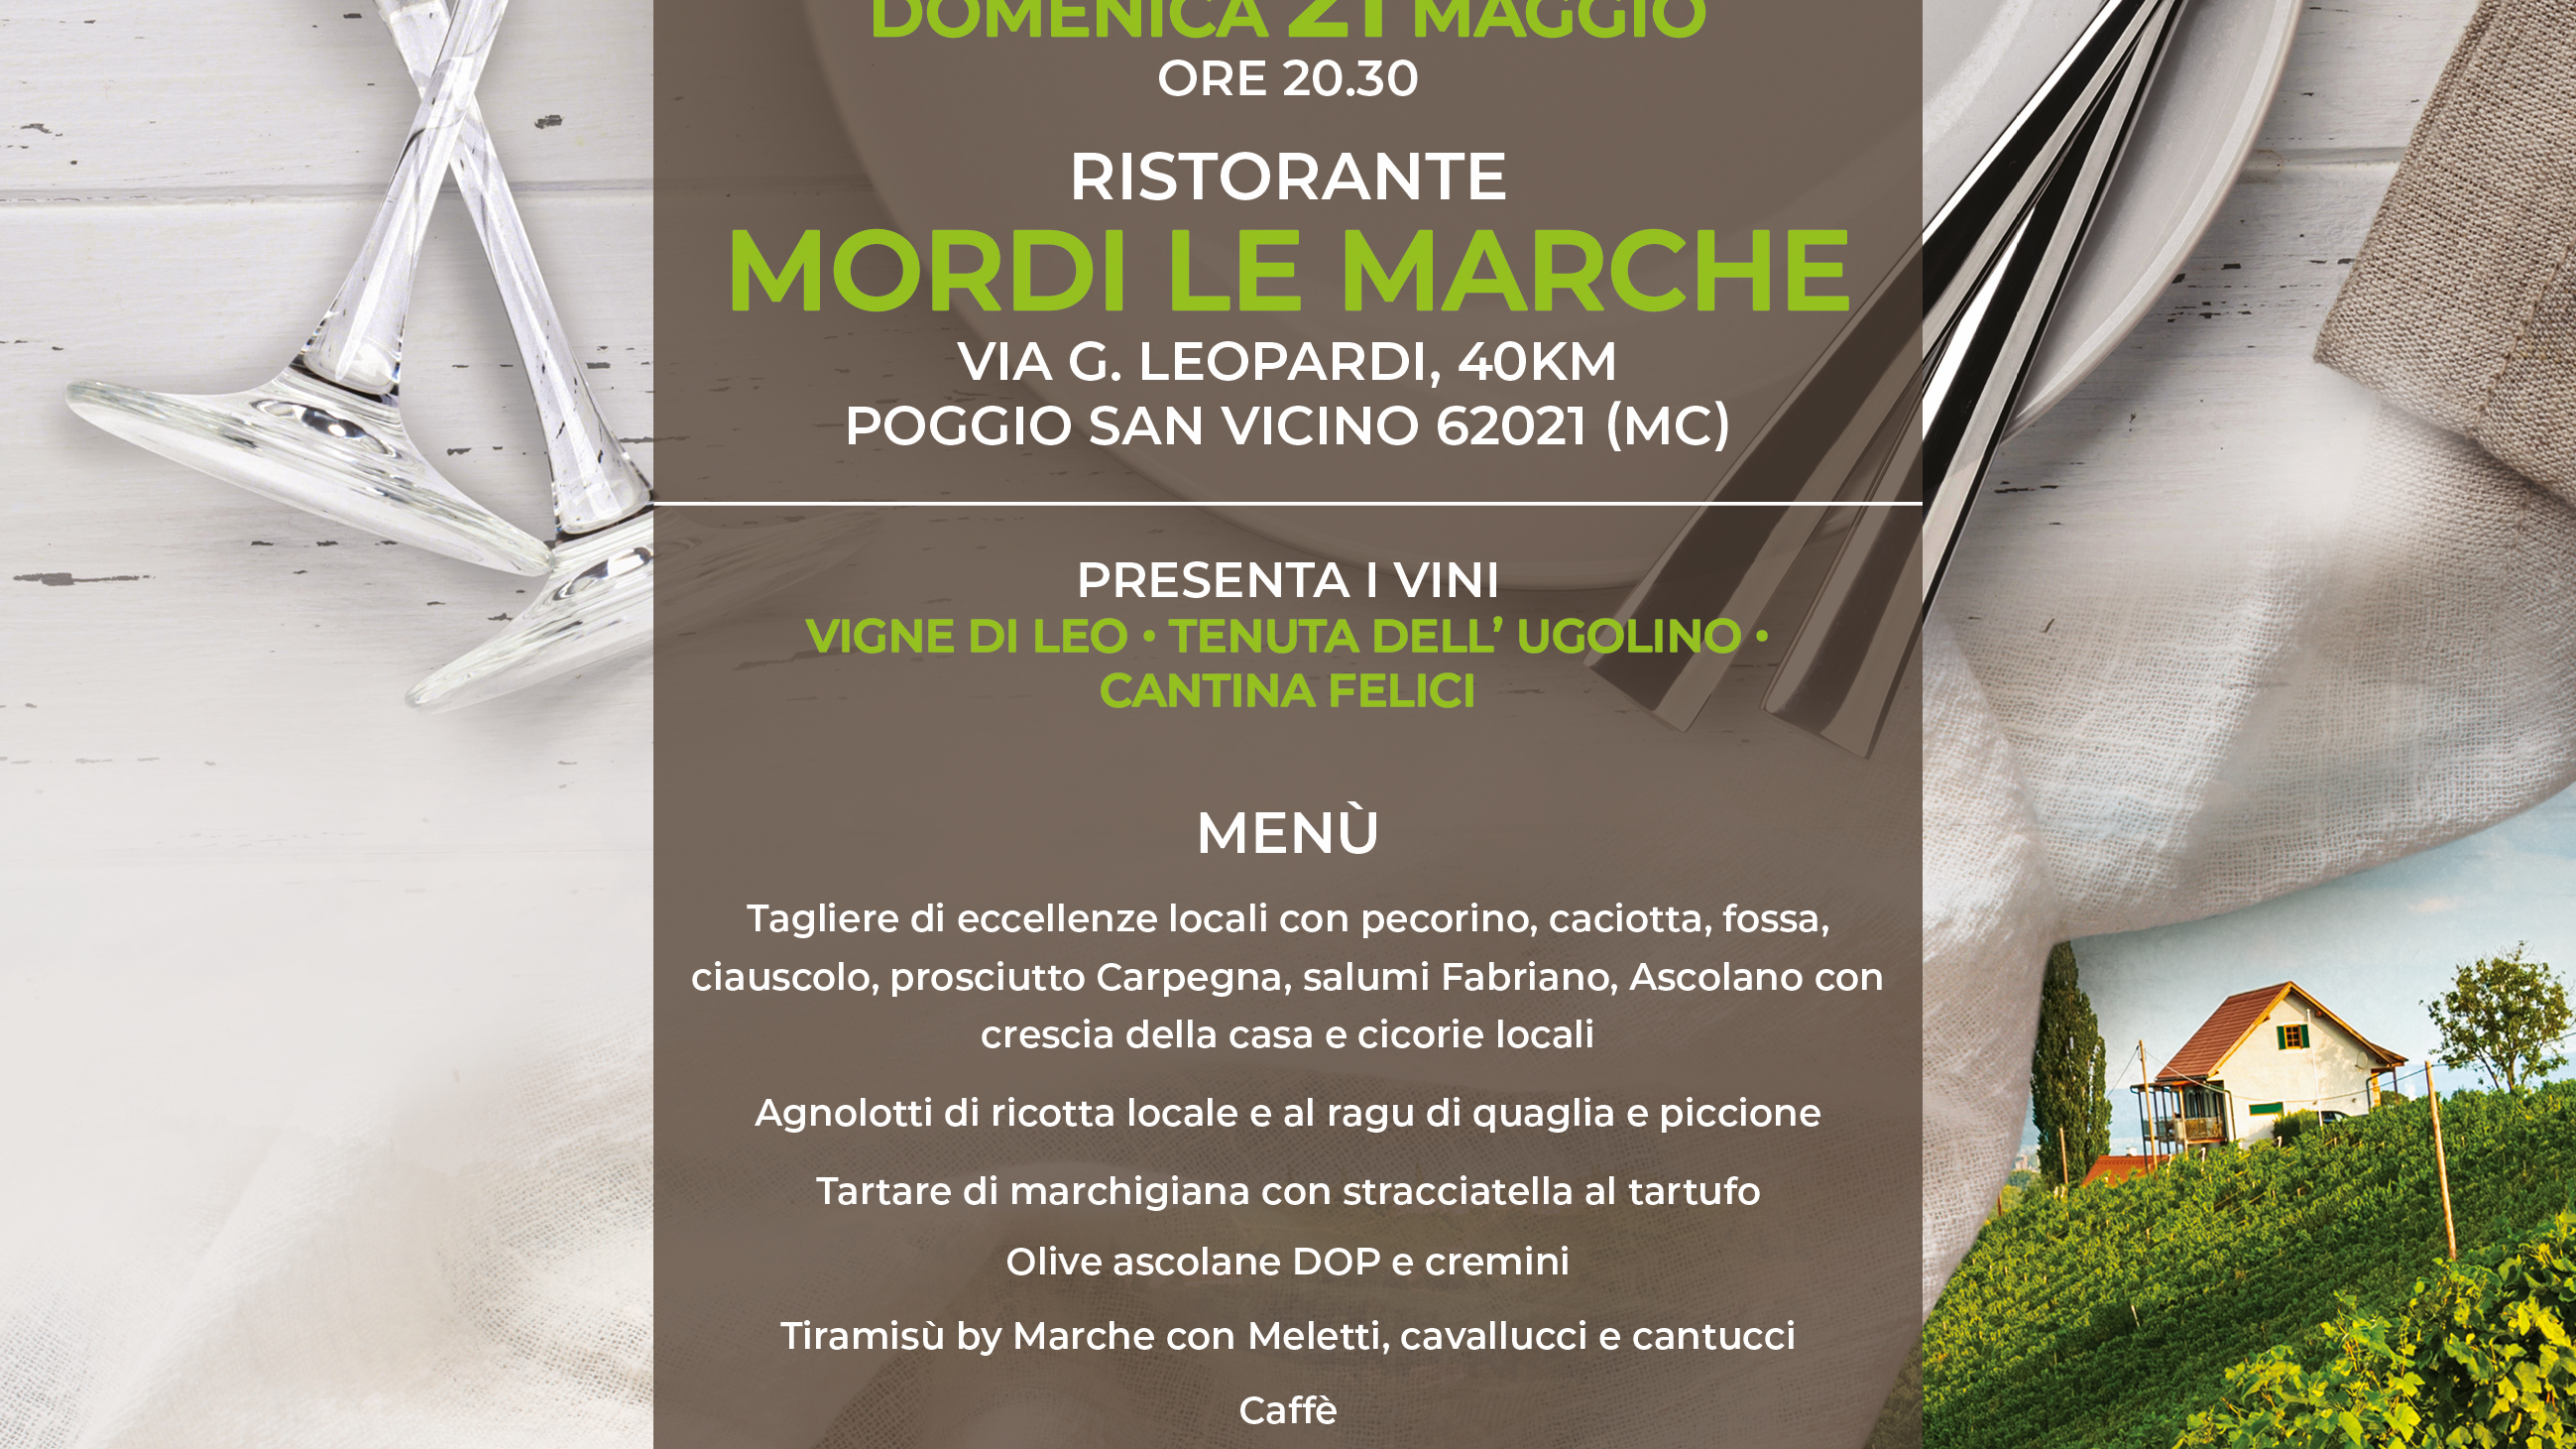 MARCHE & WINE ENOTURISMO "Mordi le Marche"